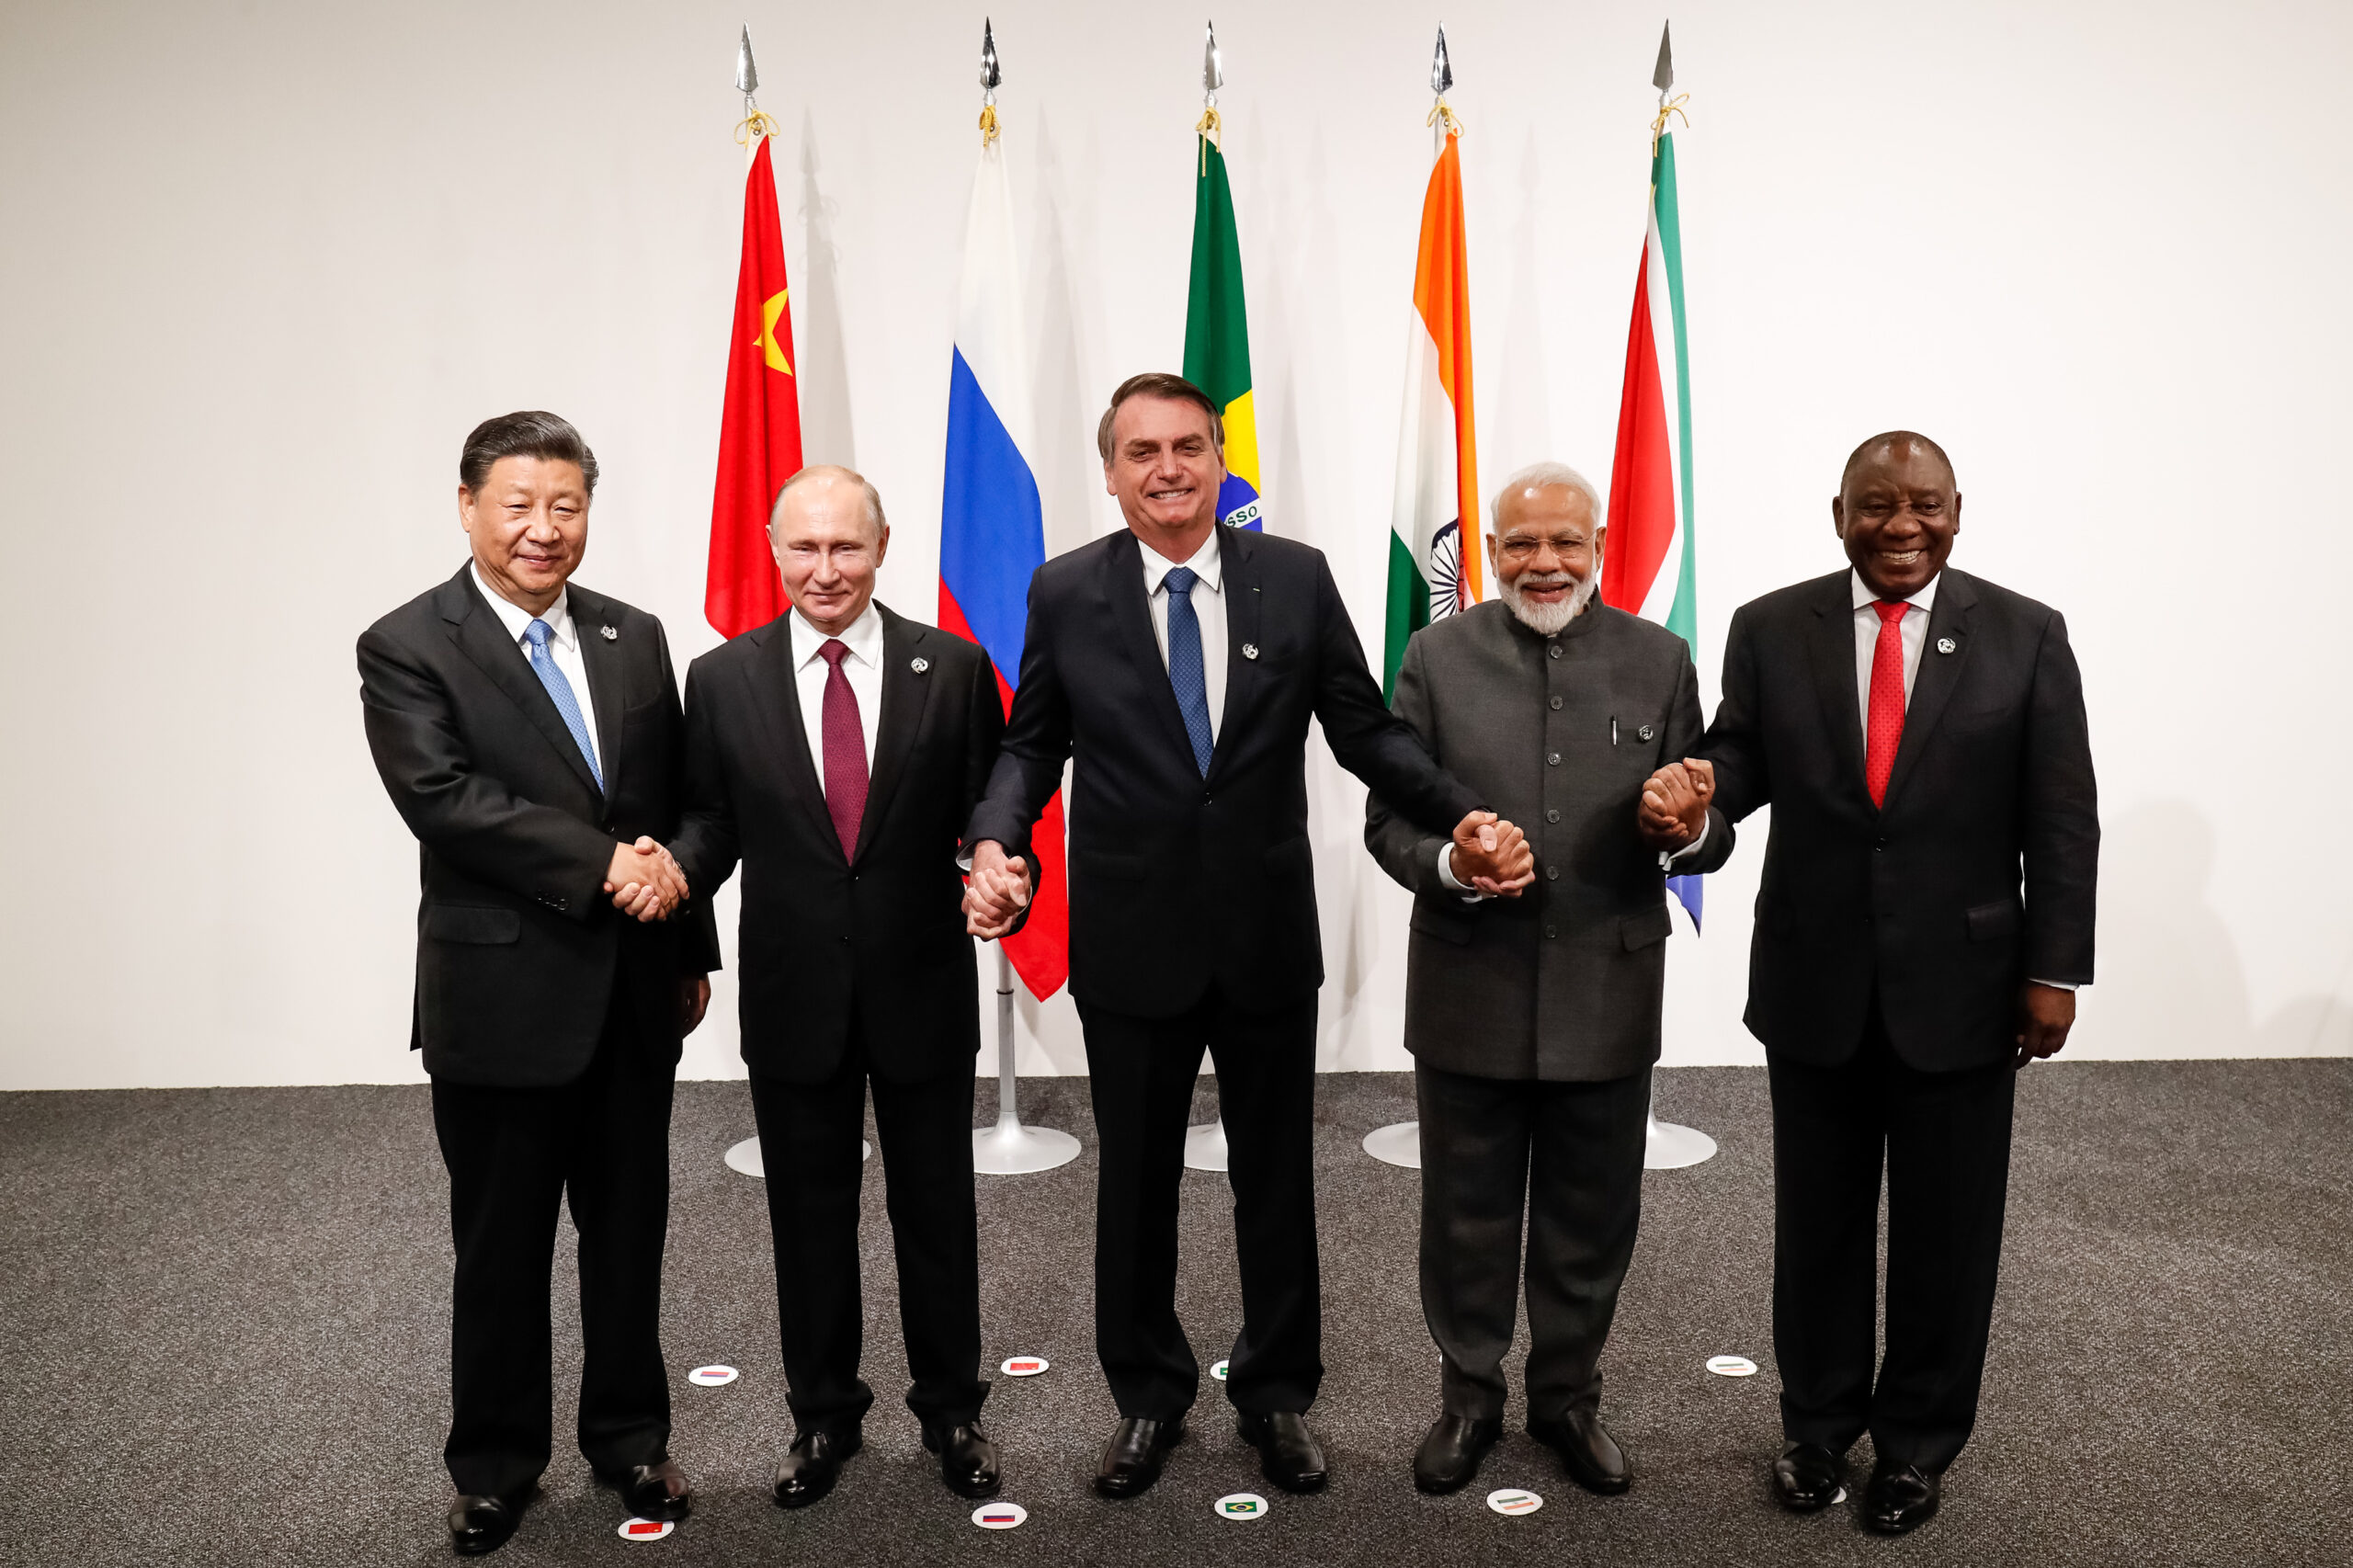 Komoly átalakulás várható? Már Franciaország is érdeklődik a BRICS iránt, kiemelt kép